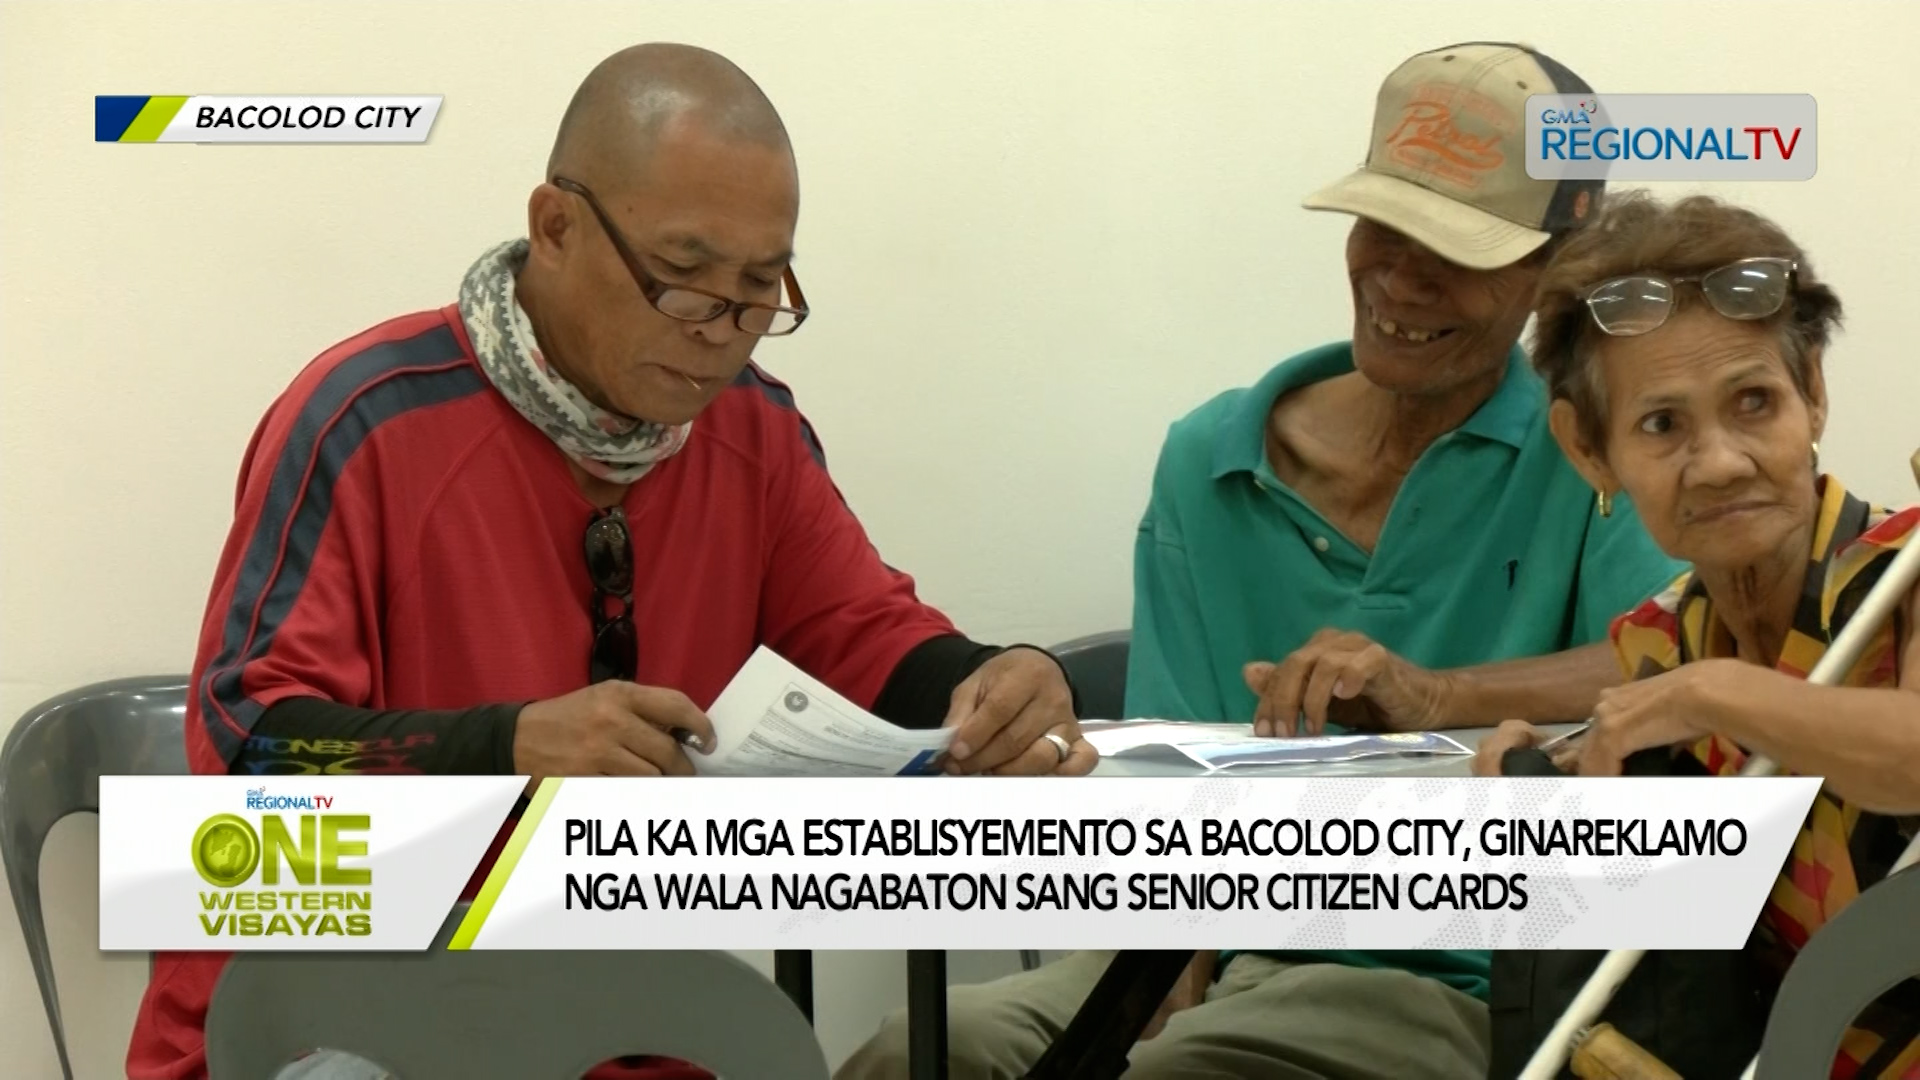 Pila ka establisyemento sa Bacolod City, wala nagabaton sang senior citizen ID